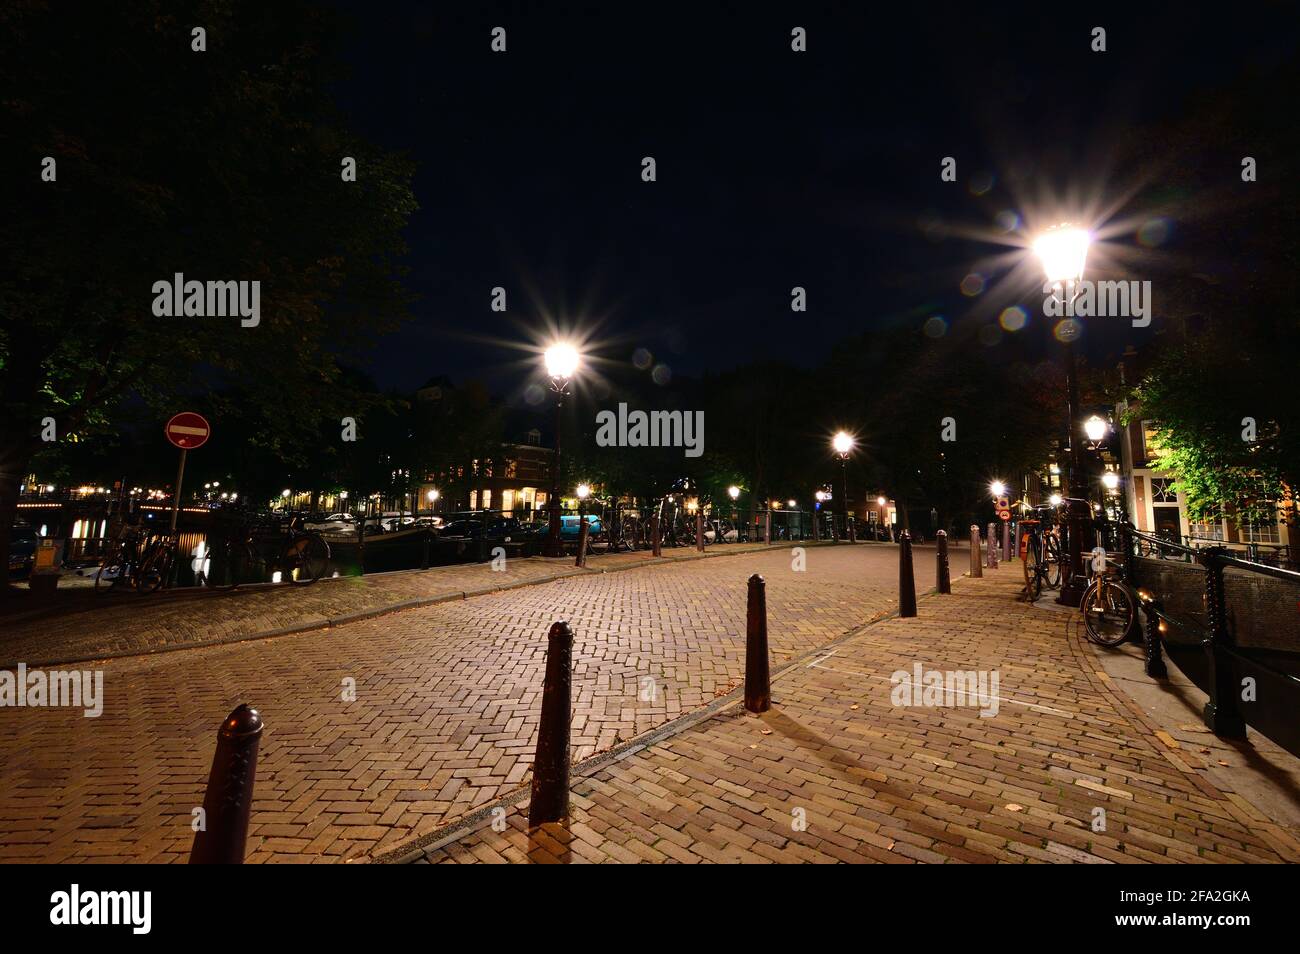 Una notte ad Amsterdam. Strada acciottolata illuminata da lampioni. Estate. Foto Stock